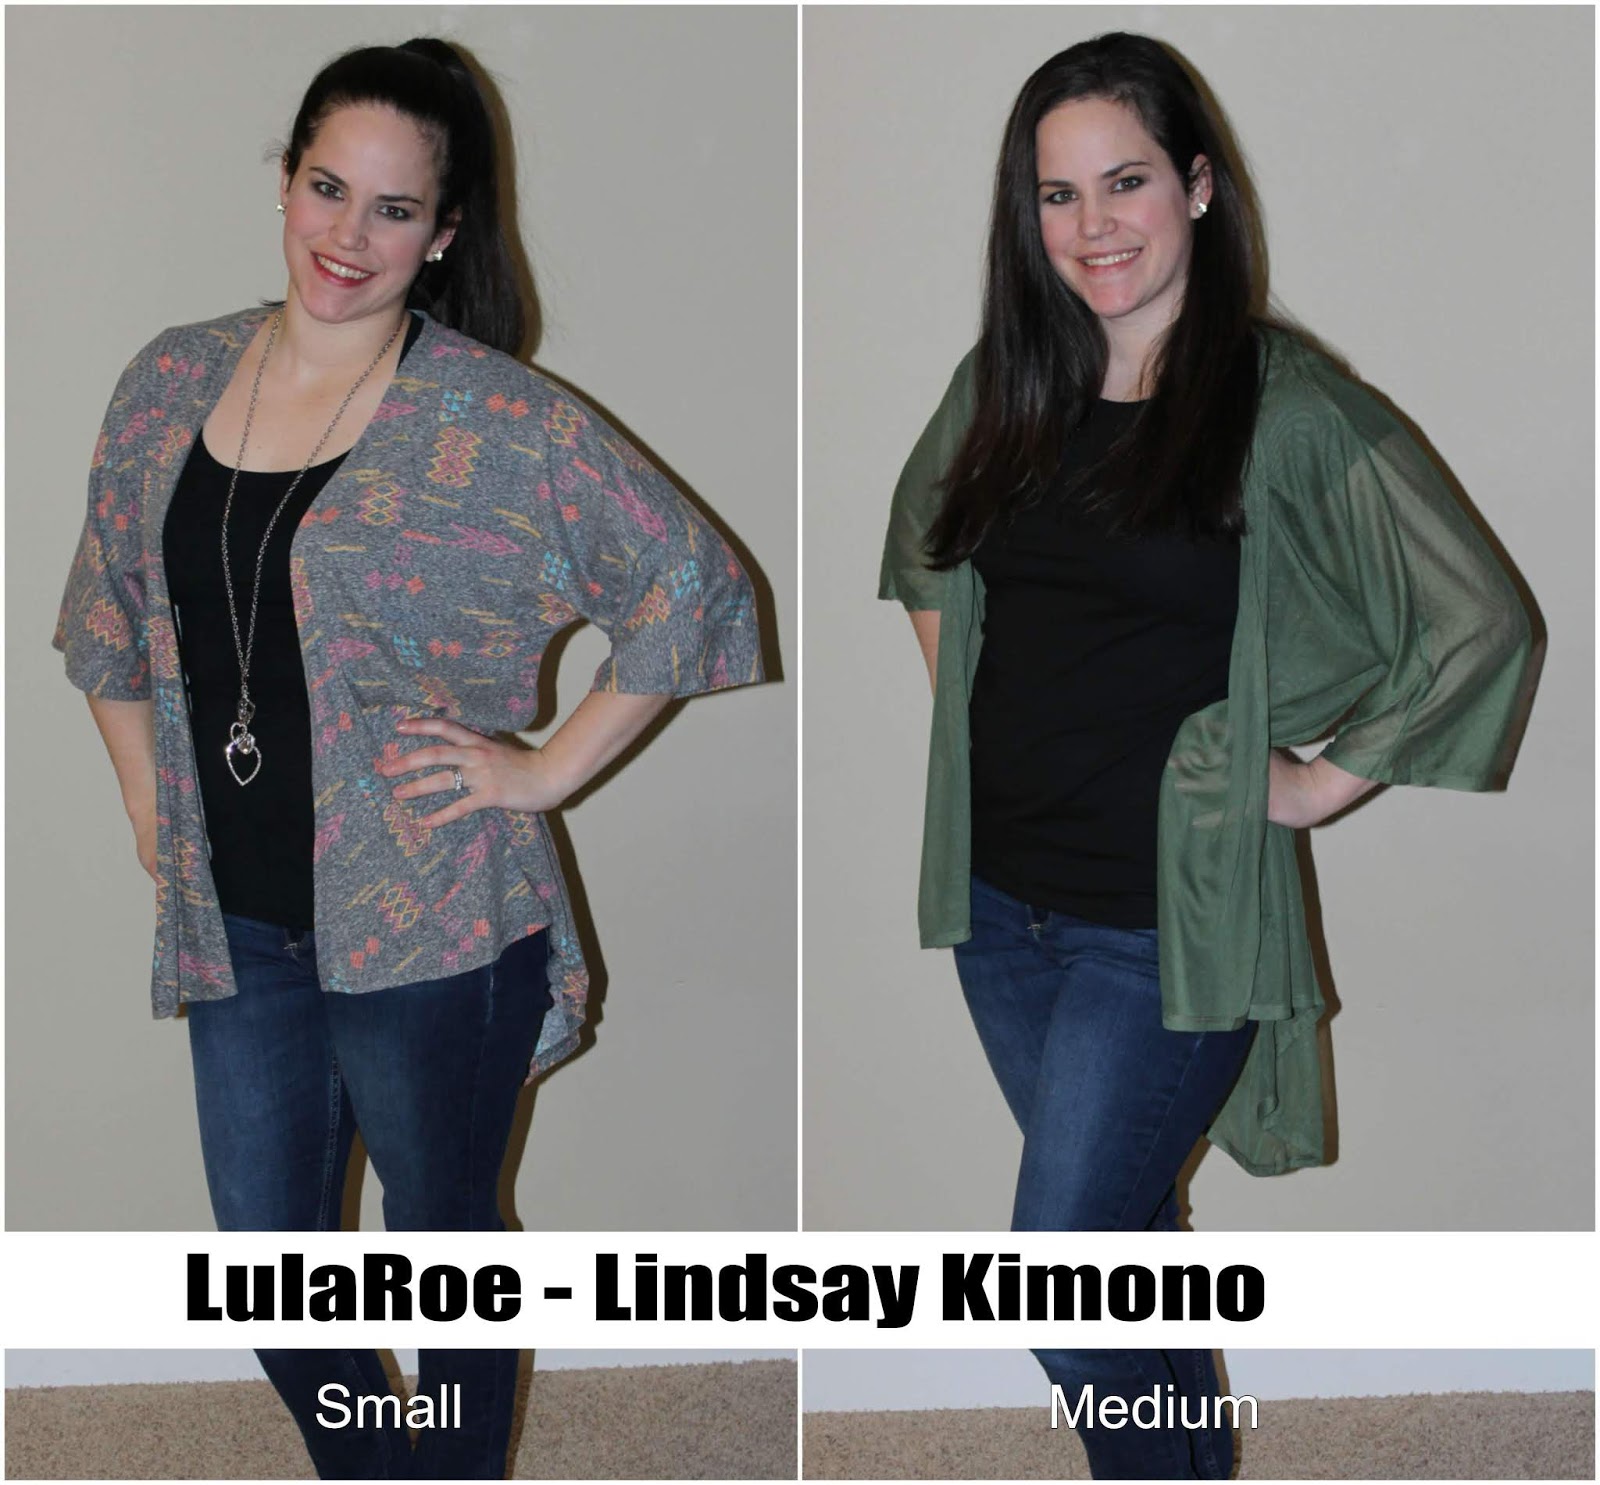 Lularoe Monroe Kimono Size Chart